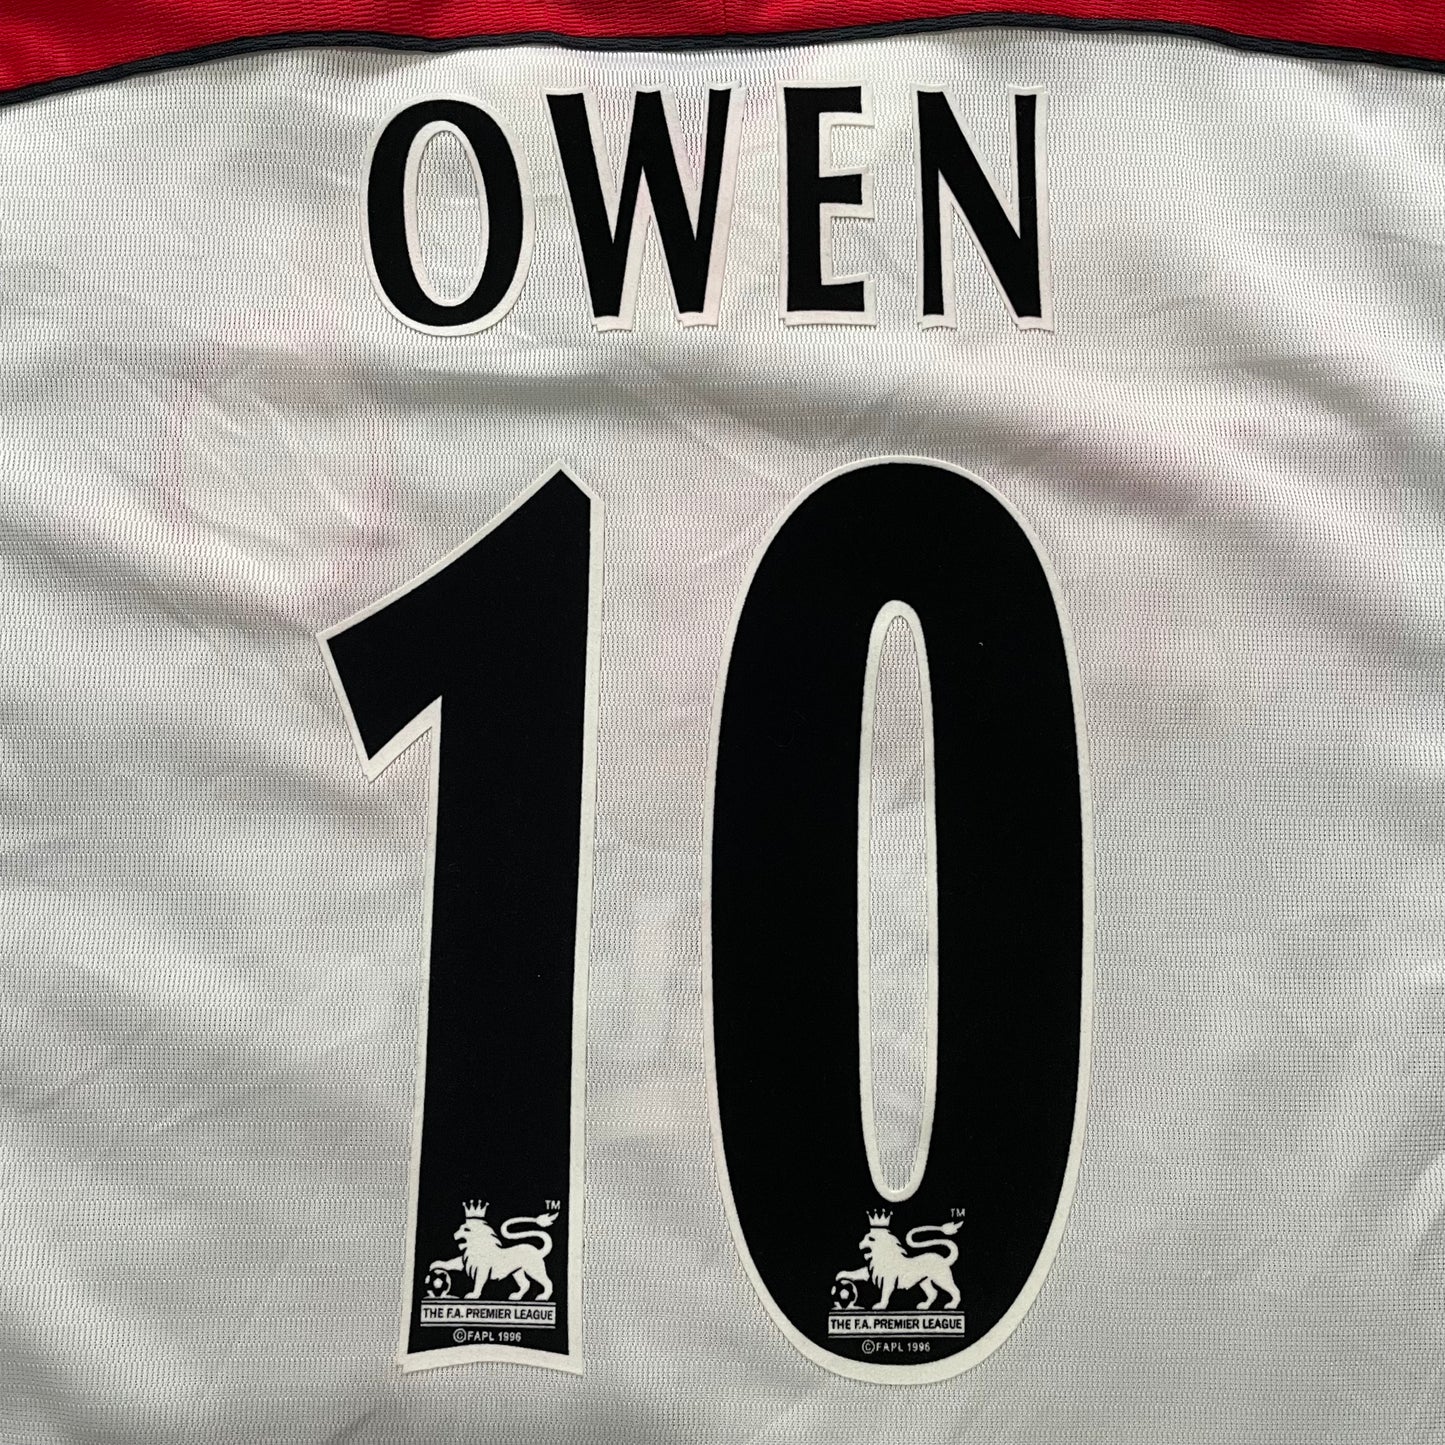 1998-1999 Liverpool FC away shirt #10 Owen (M/L – 38/40)